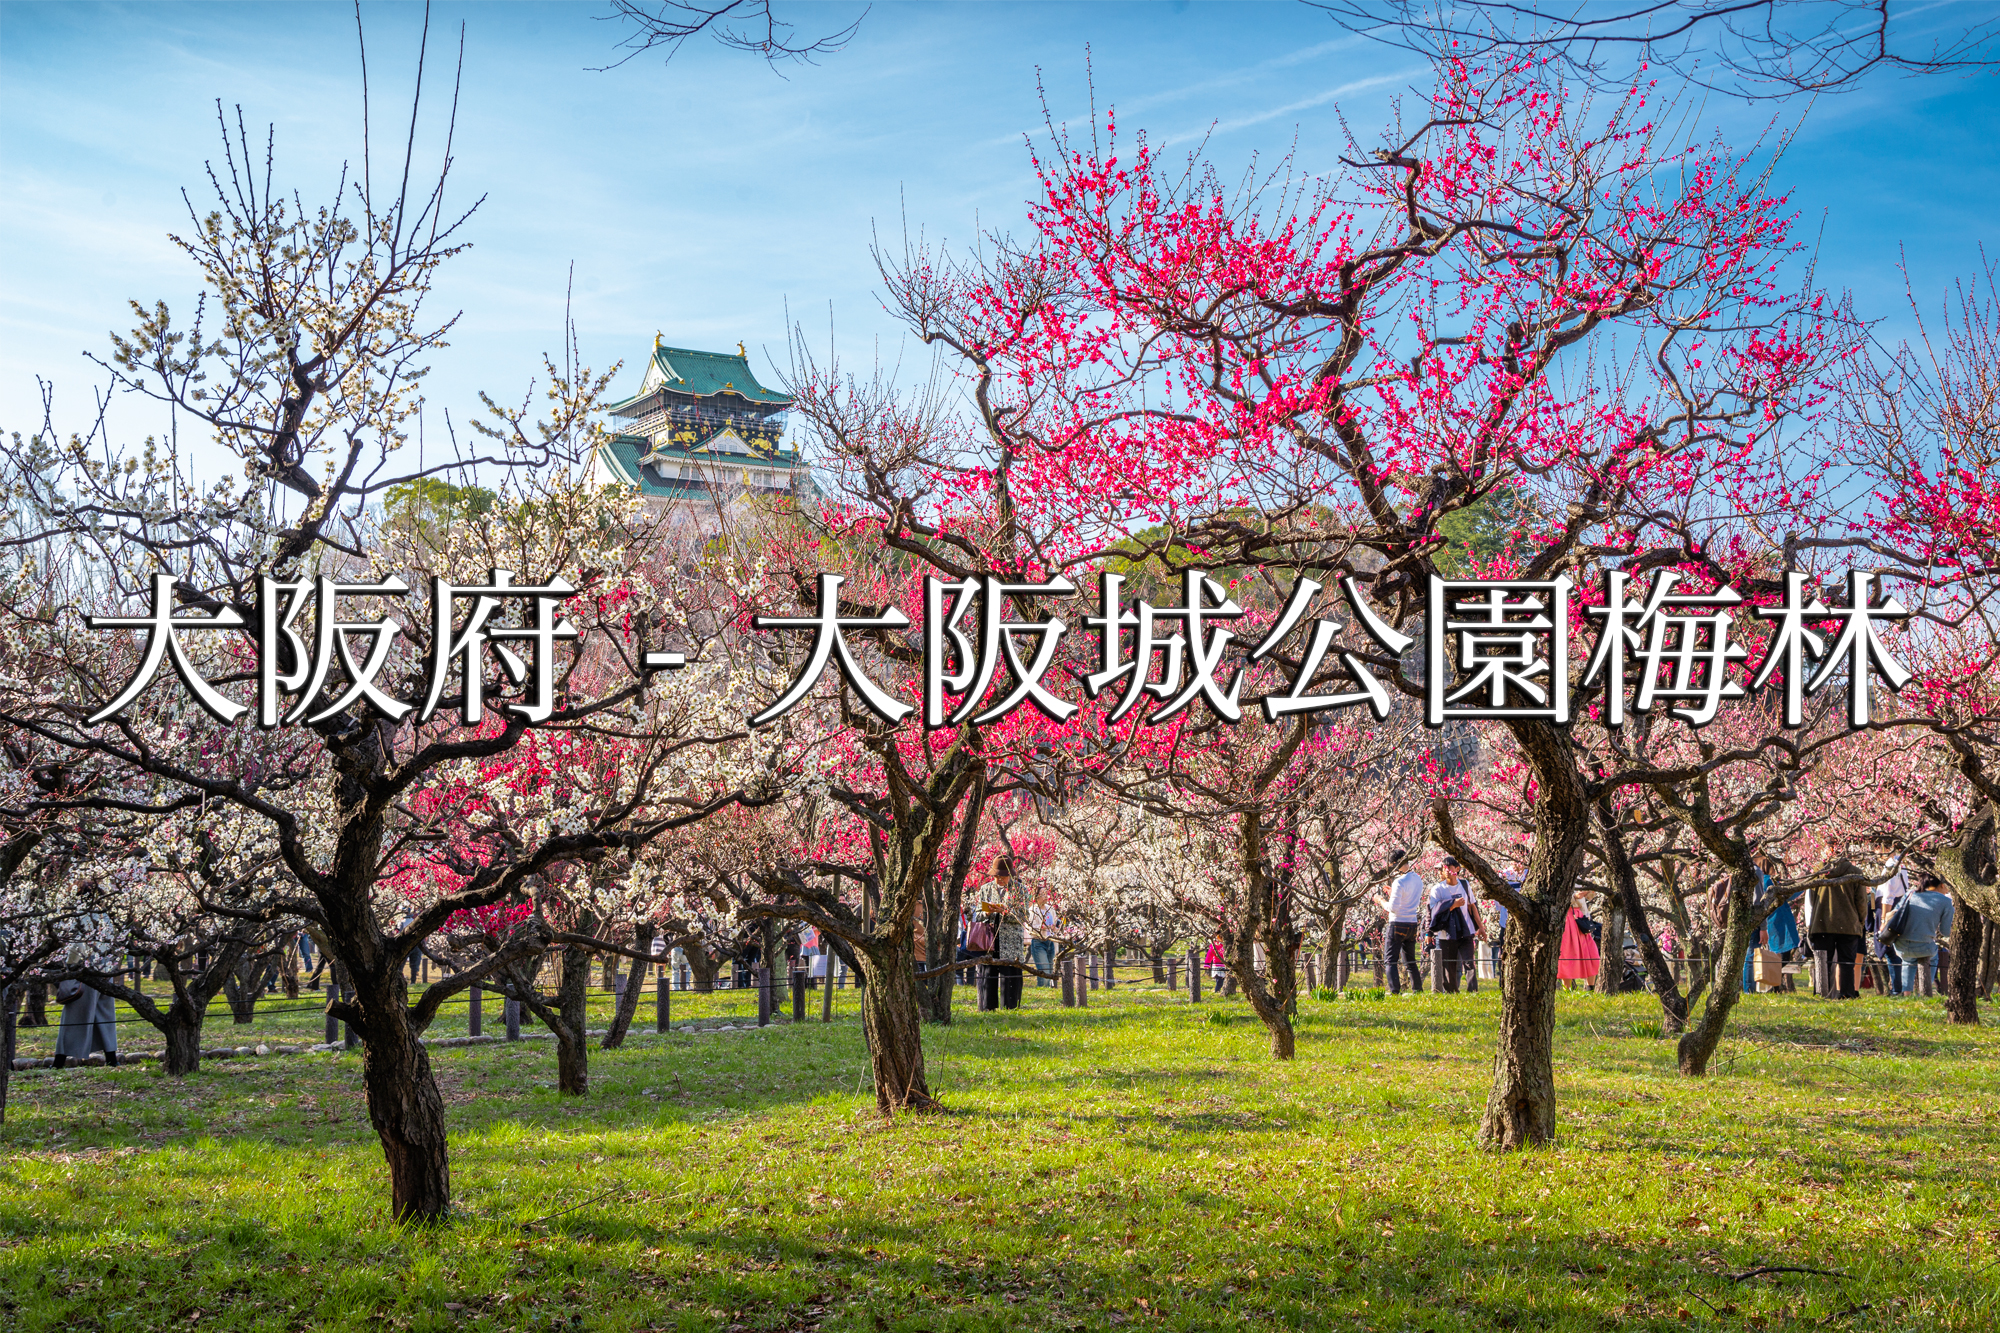 大阪府 大阪城公園梅林 大阪城の庭園に咲く100品種の梅が見れる写真スポット 撮影した写真の紹介アクセス情報や交通手段 駐車場情報などまとめ 写真や映像で紹介する関西 近畿の絶景カメラ 観光スポット